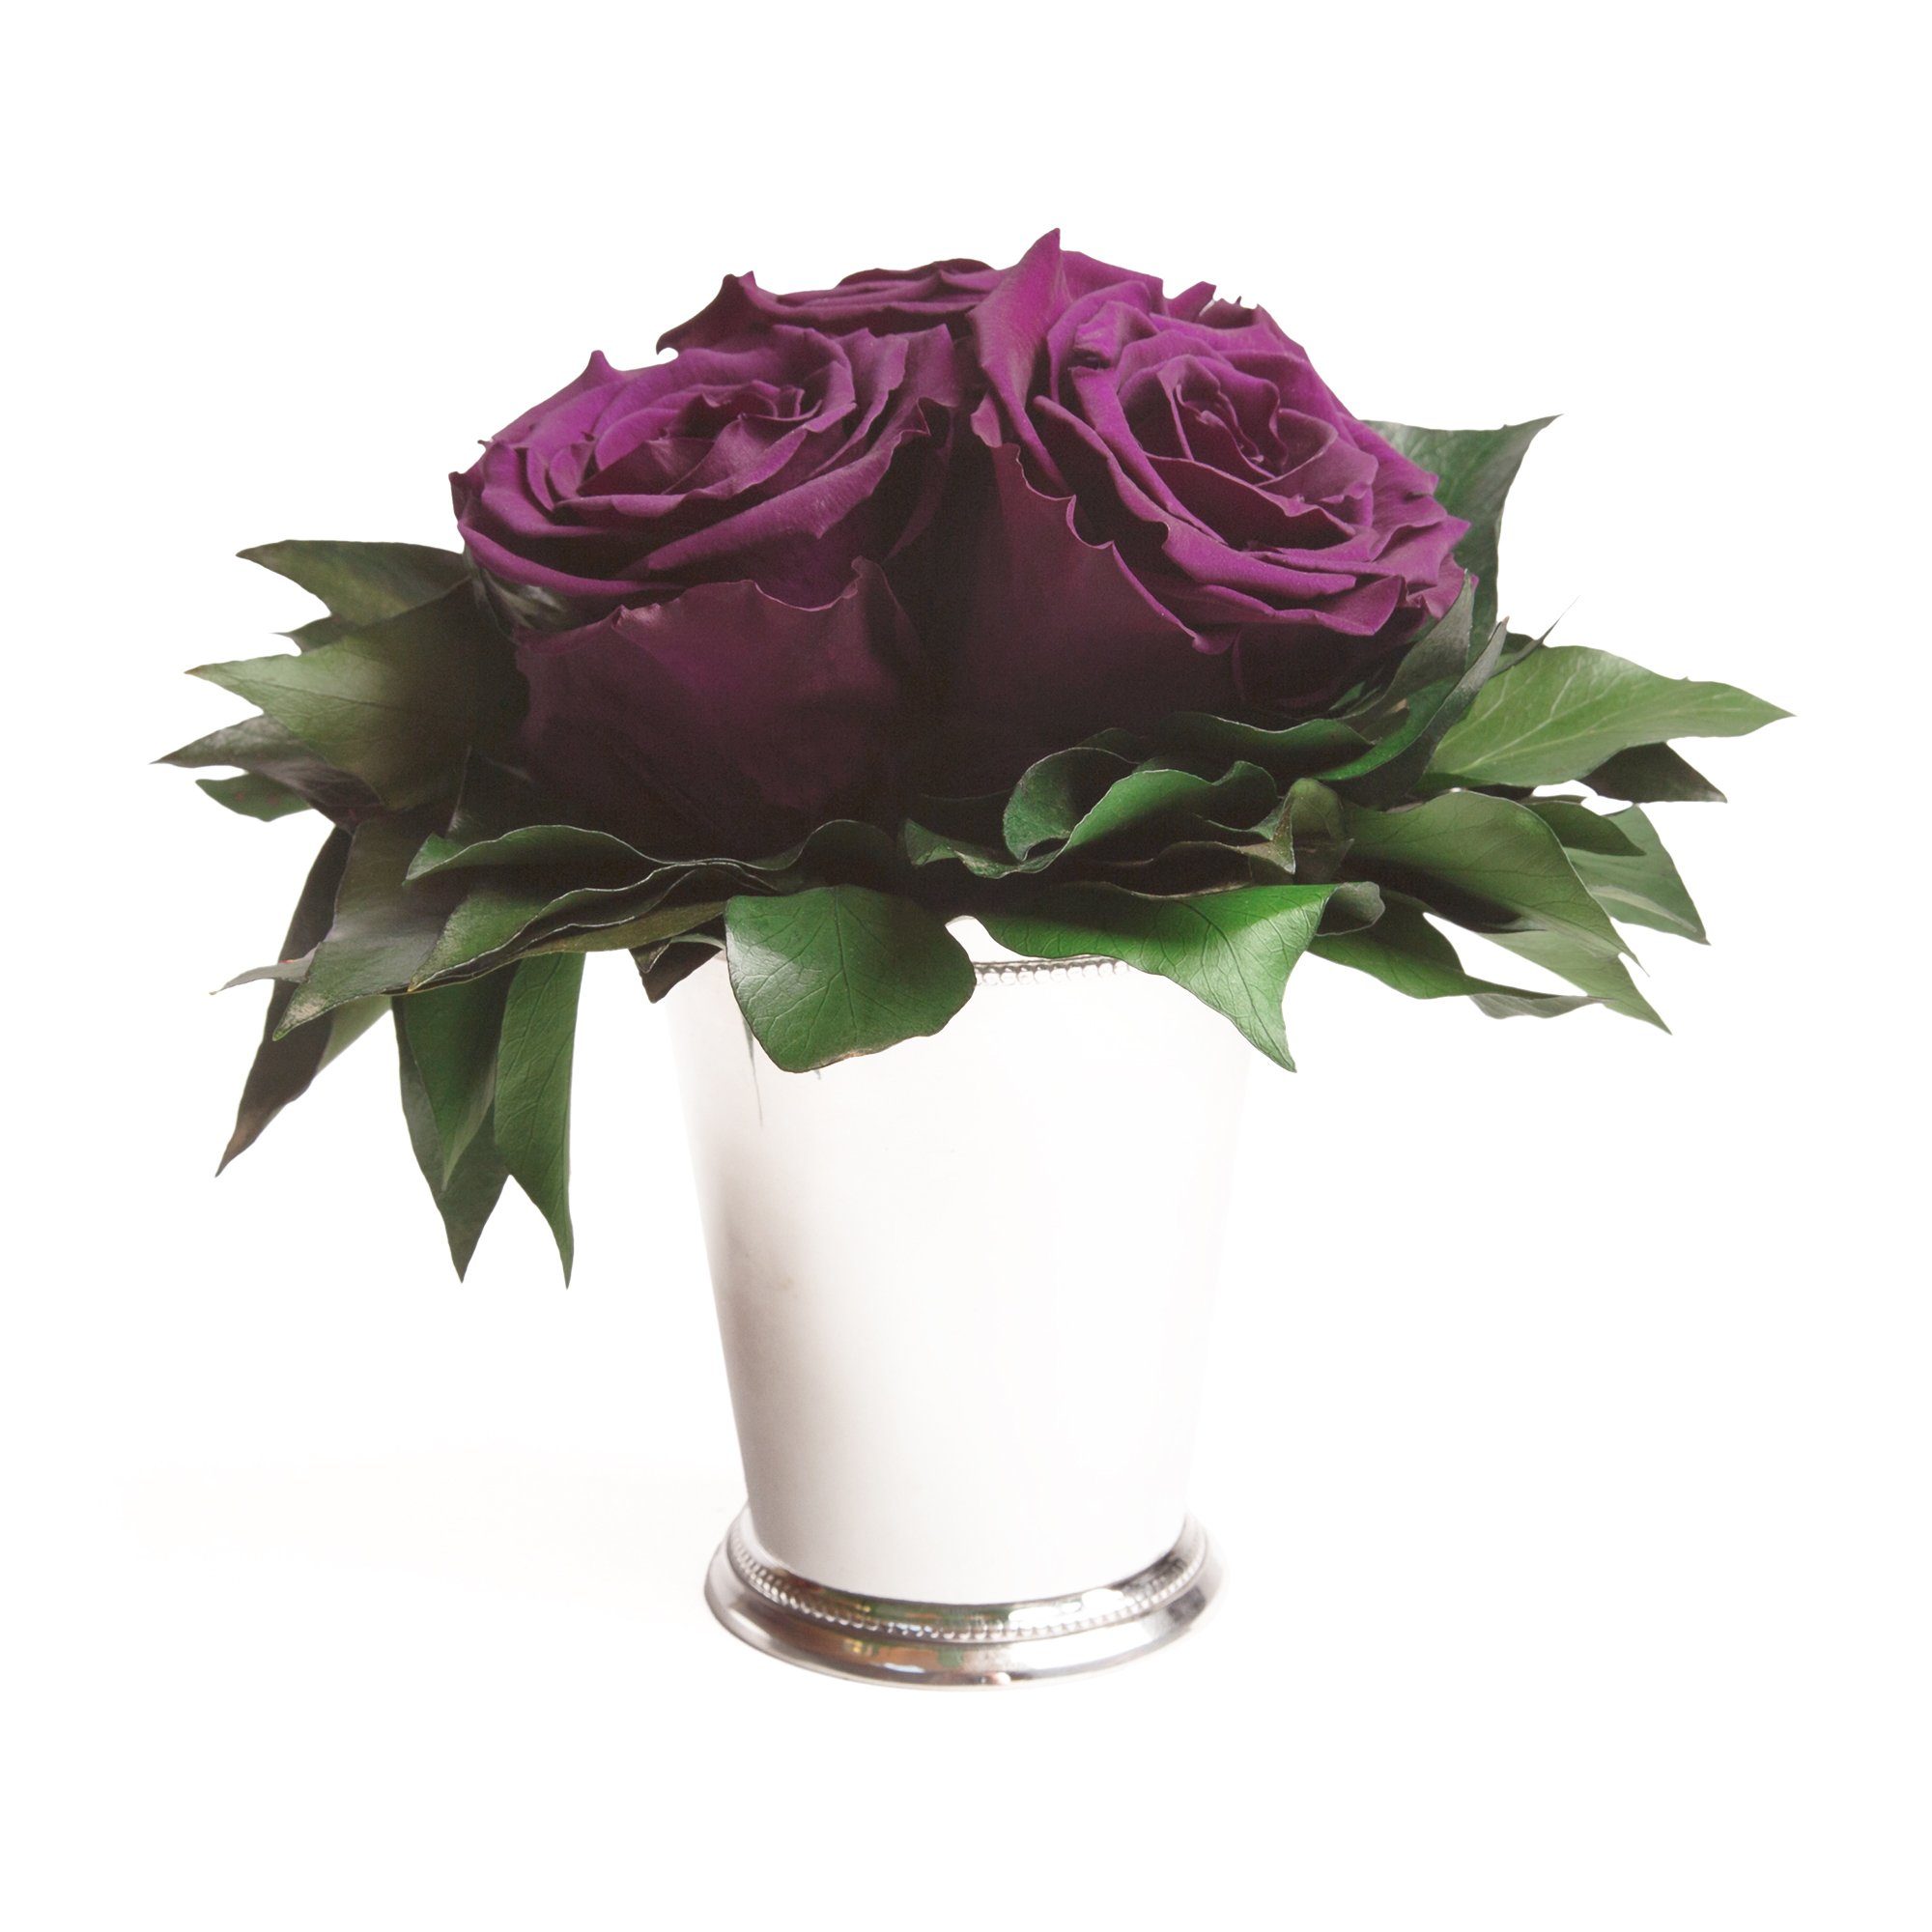 Kunstorchidee 3 Infinity Rosen silberfarbene Vase Wohnzimmer Deko Blumenstrauß Rose, ROSEMARIE SCHULZ Heidelberg, Höhe 15 cm, Rose haltbar bis zu 3 Jahre Lila